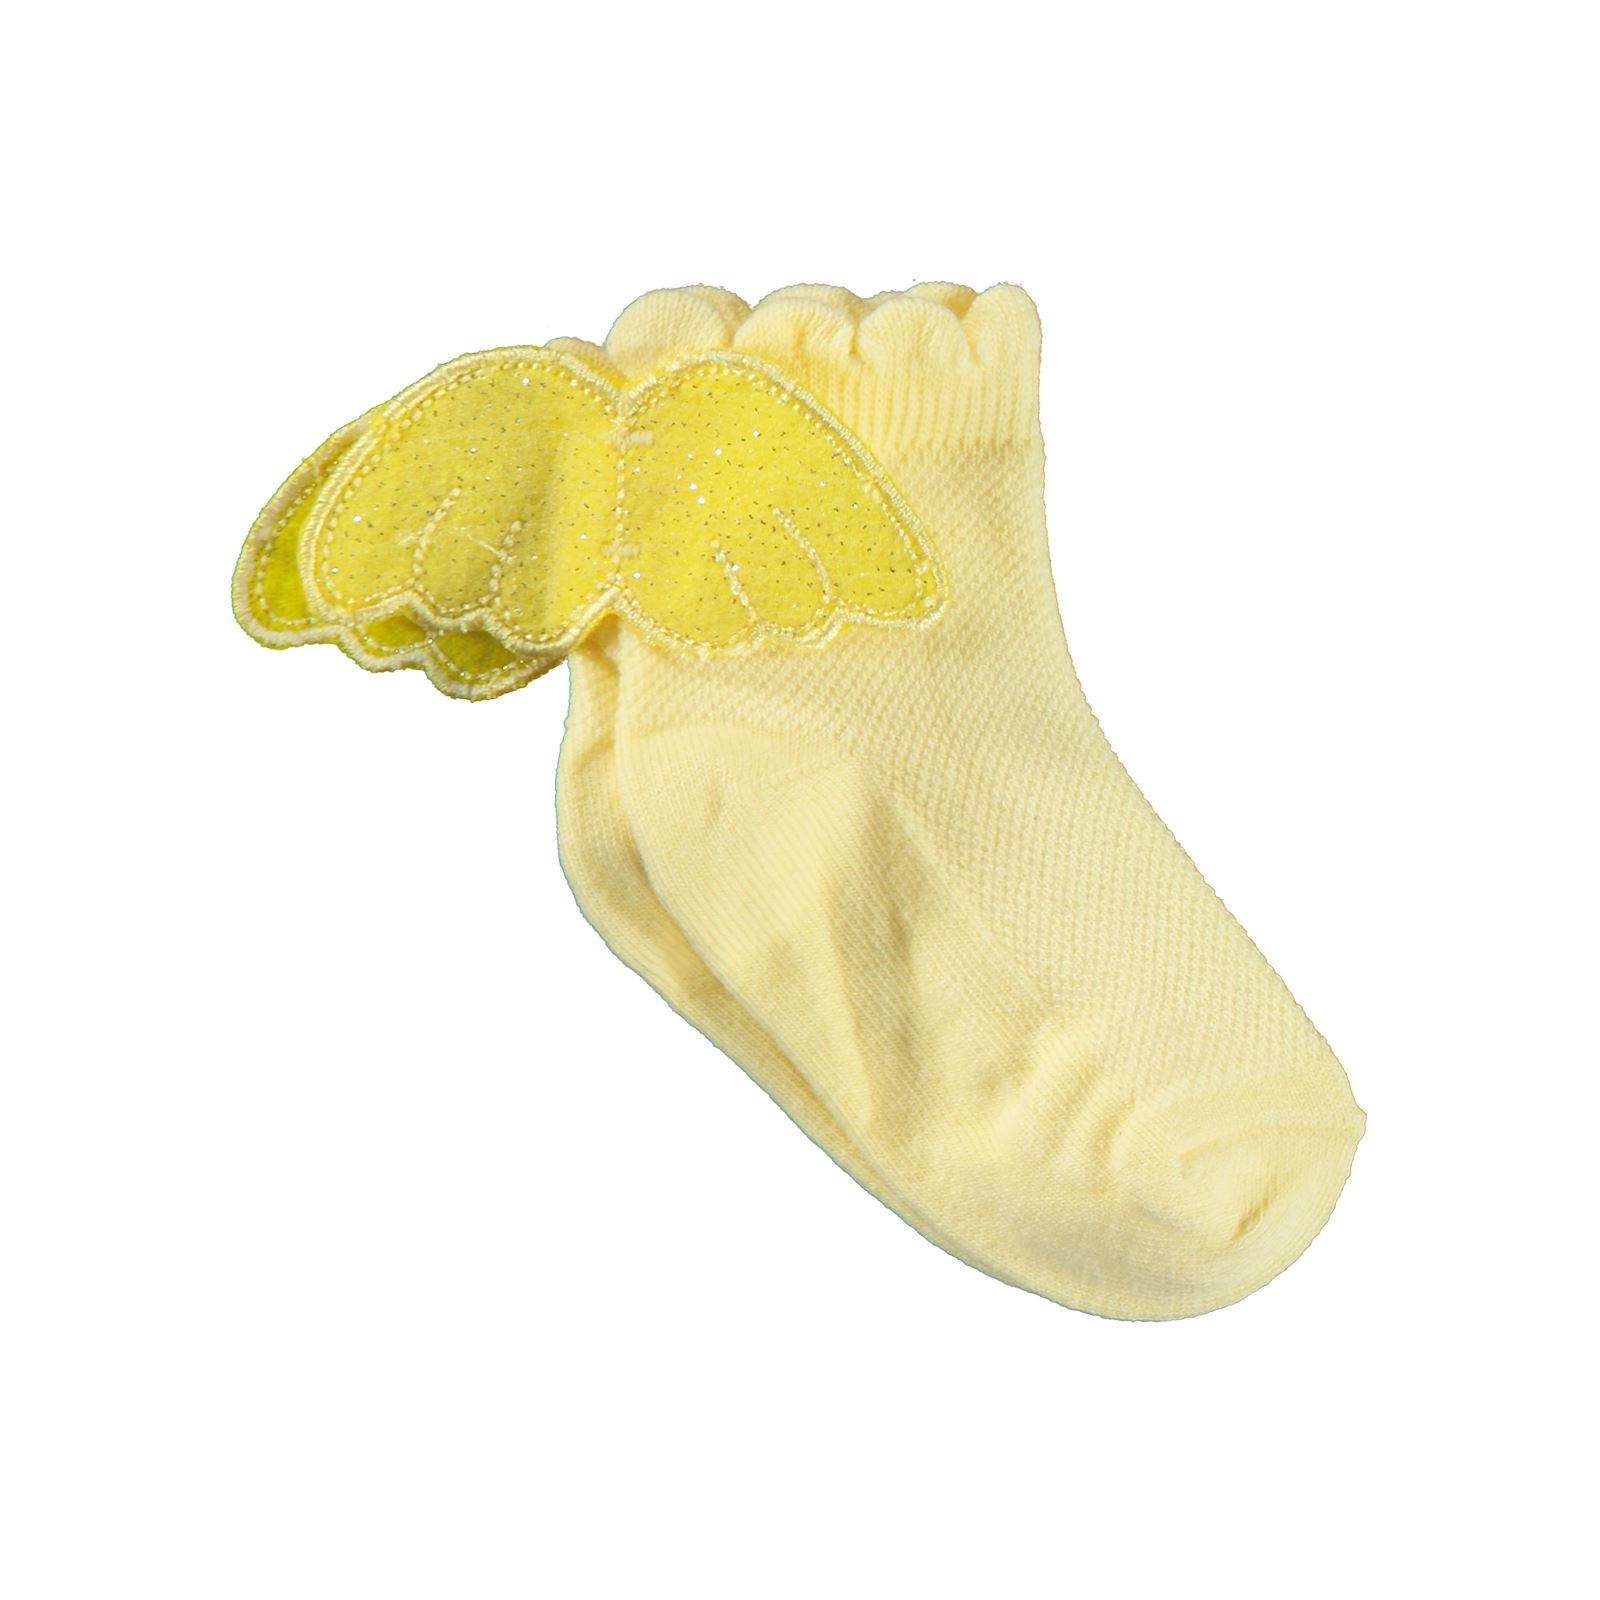 Katamino Kız Çocuk Soket Çorap 1-7 Yaş Sarı 